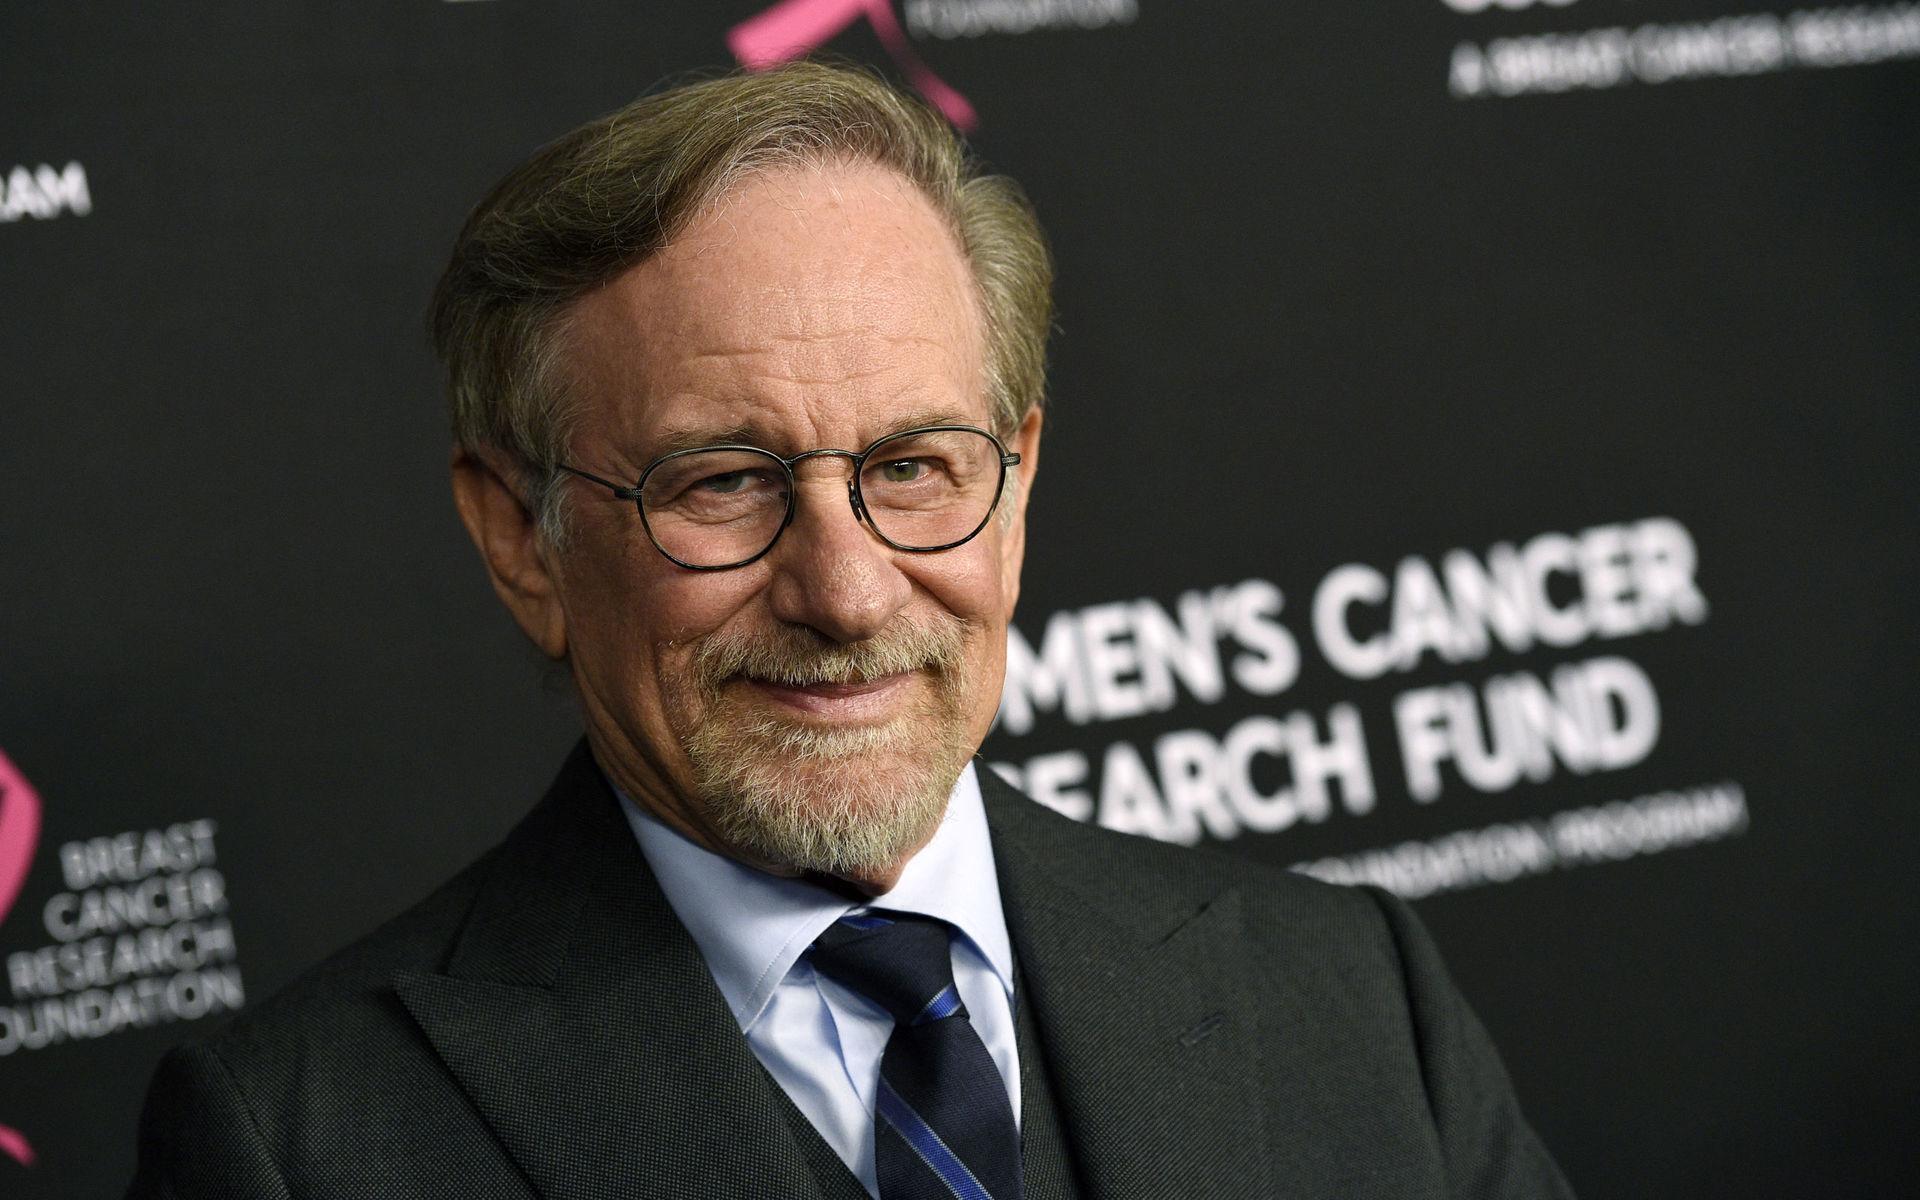 Steven Spielberg minns Kirk Douglas handskrivna brev och faderliga råd, och hans visdom och mod, säger han i ett uttalande.